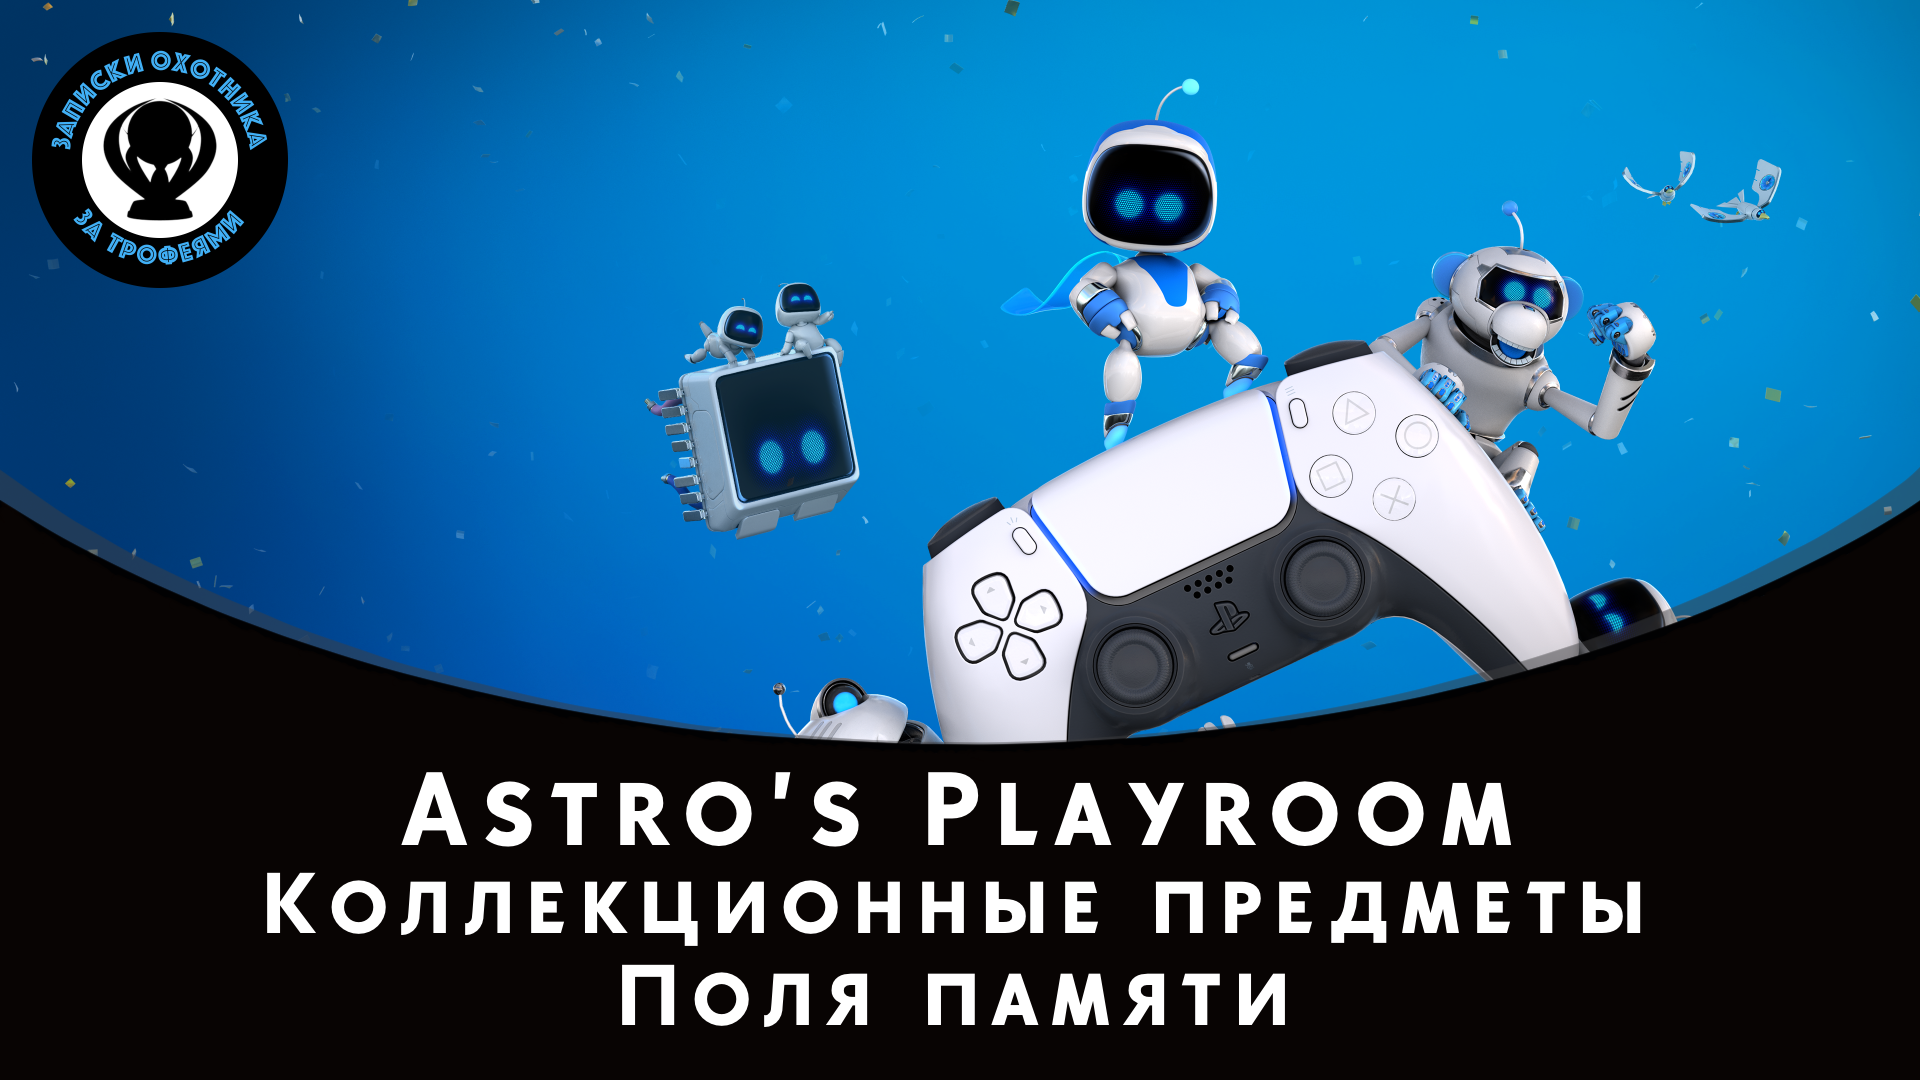 Astro’s Playroom — Все коллекционные предметы "Поля памяти" (Артефакты и Детали)